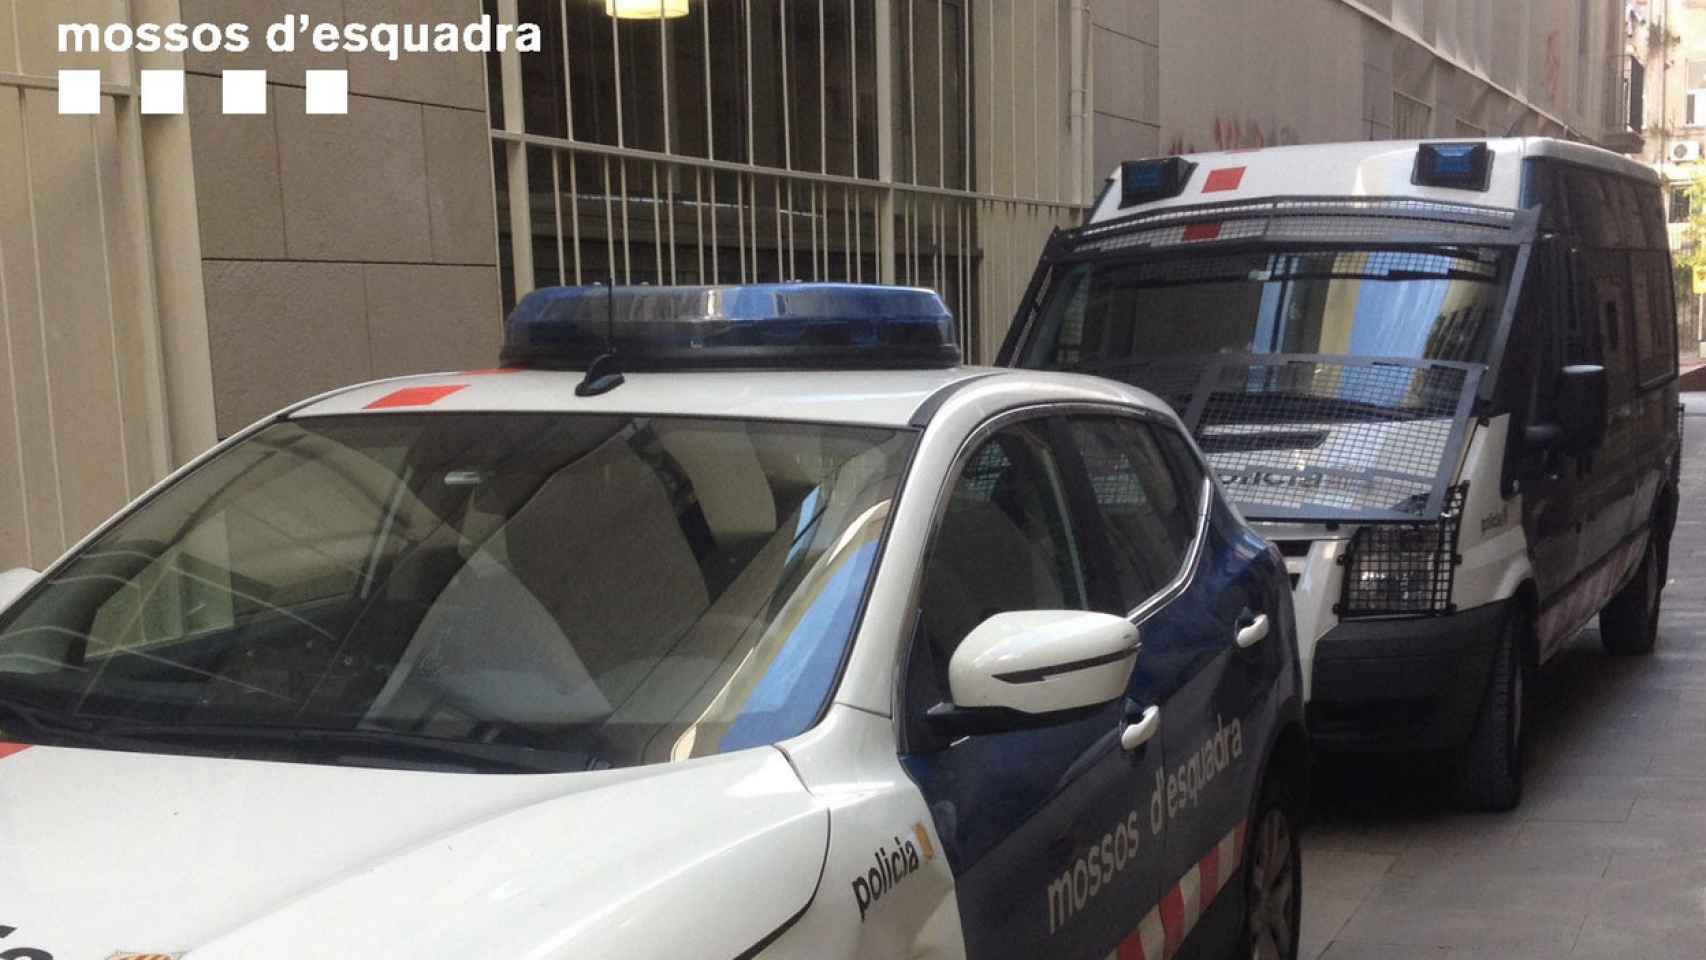 Vehículos de policías ante un colegio electoral para garantizar la seguridad/ MOSSOS